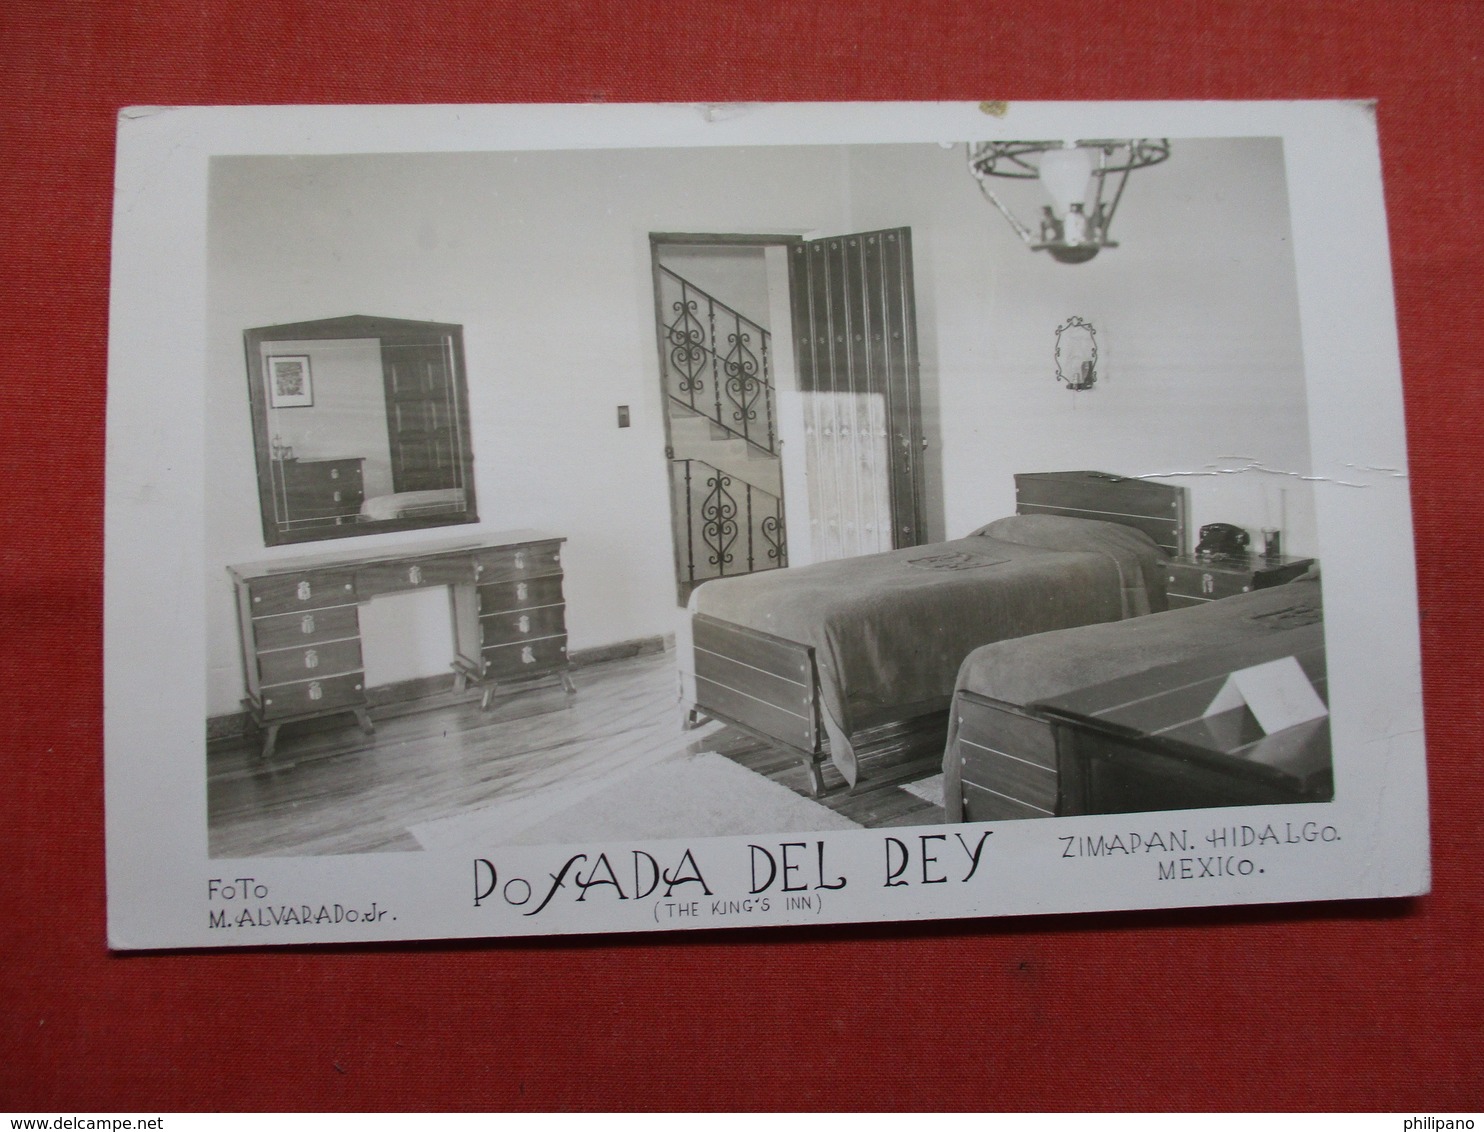 Pofada Del Ray  The Kings Inn  Zimapan Hidalgo > Mexico  -ref    3574 - Mexico